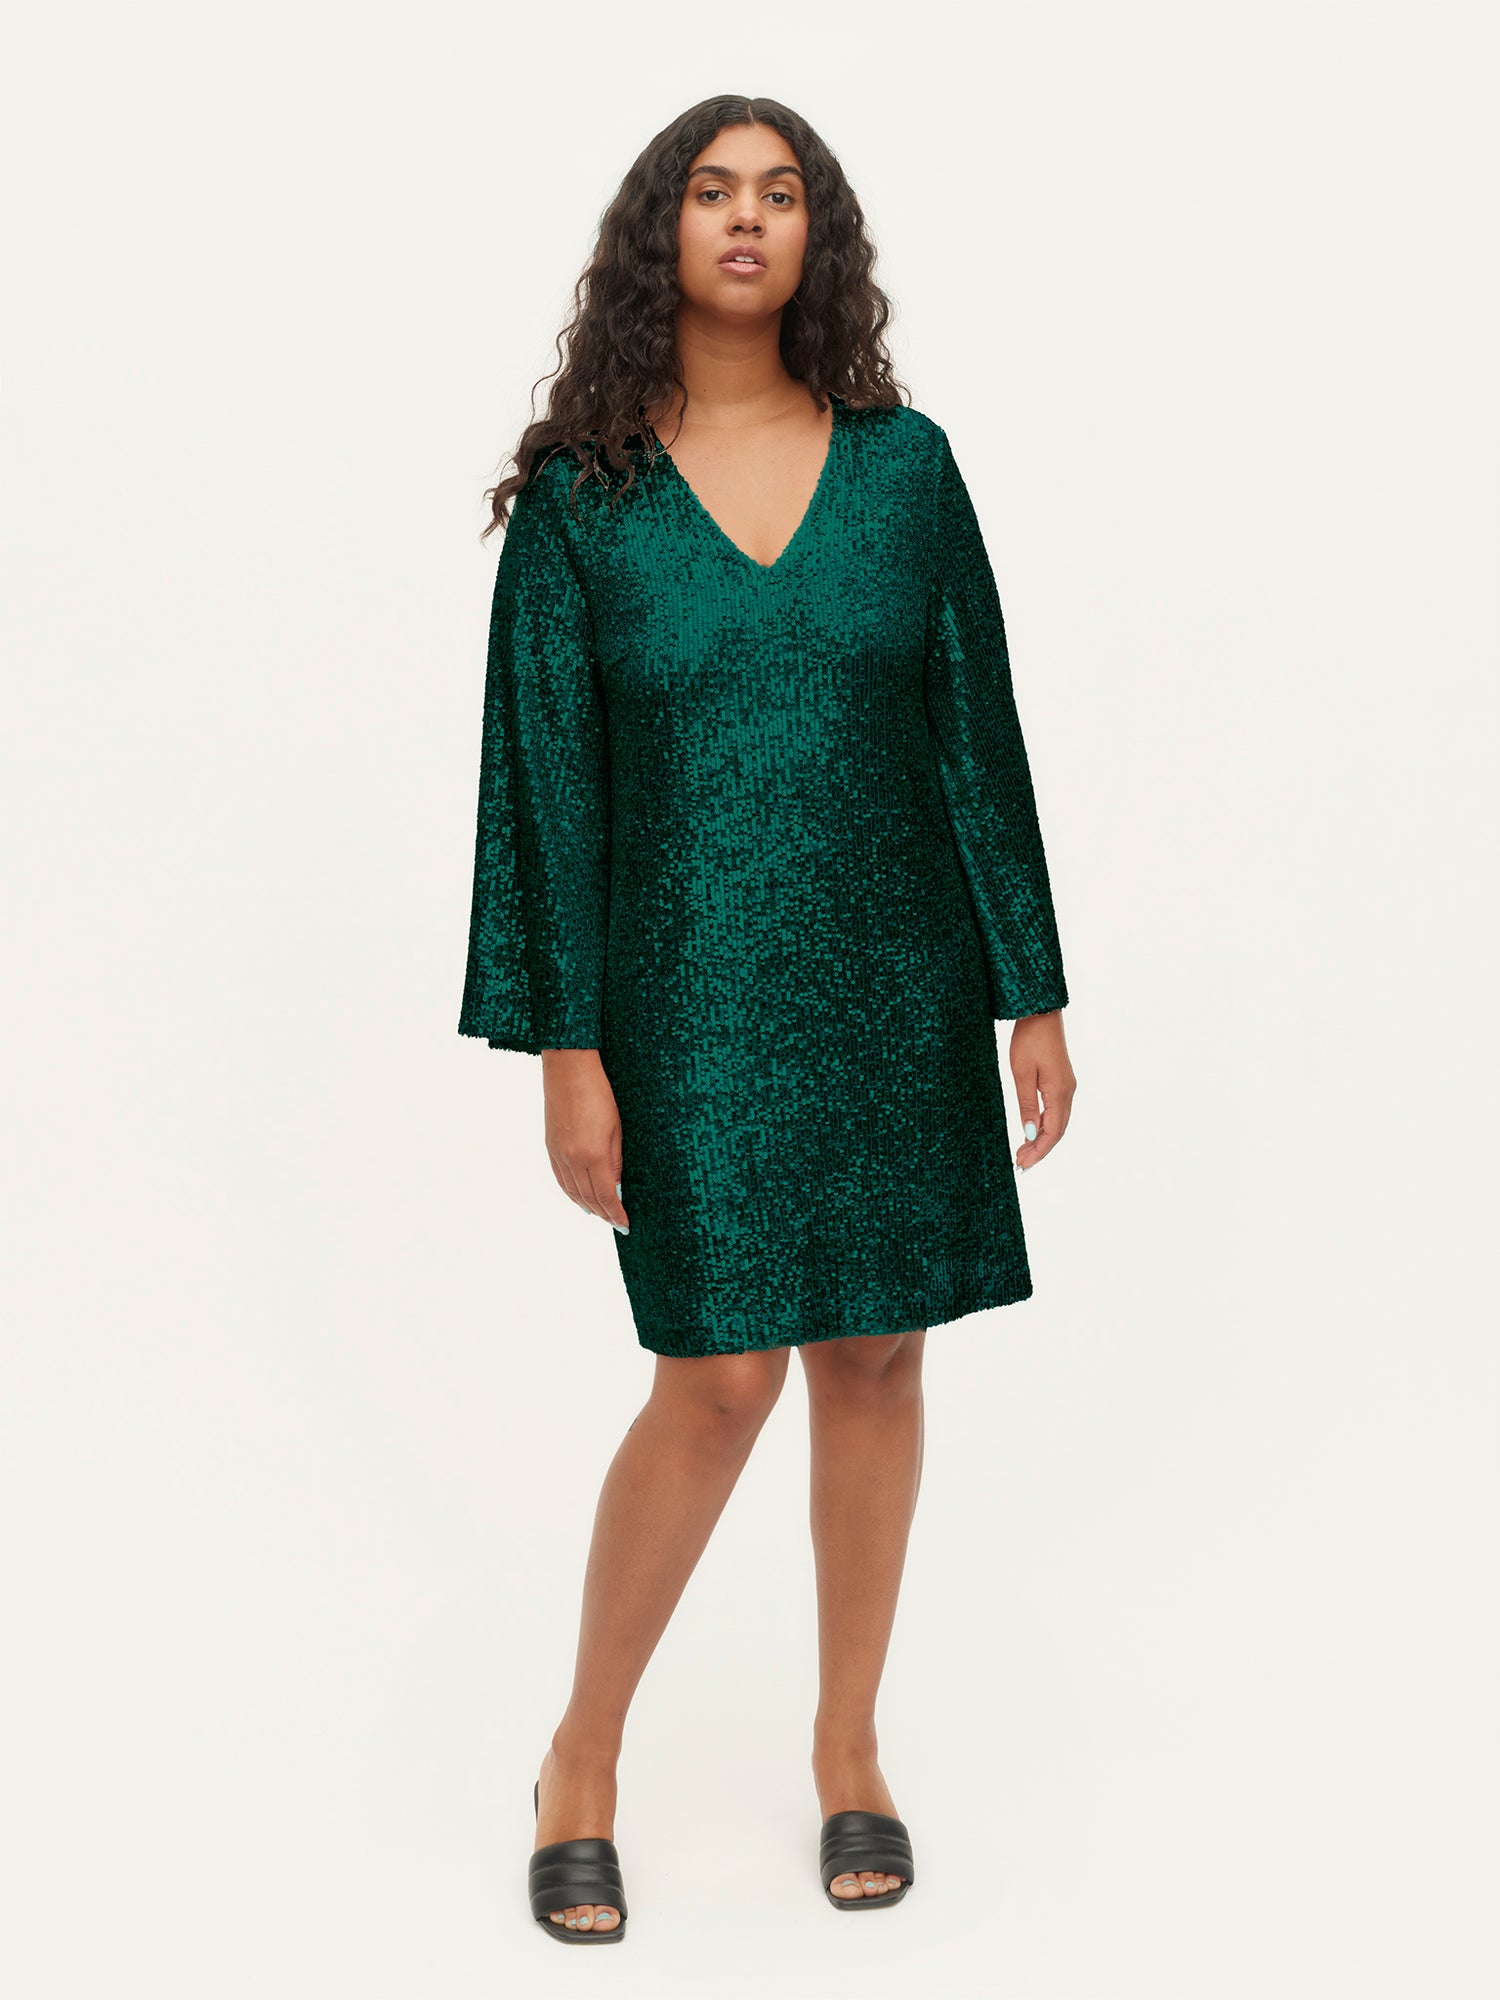 Secret Dress, Green Sequin